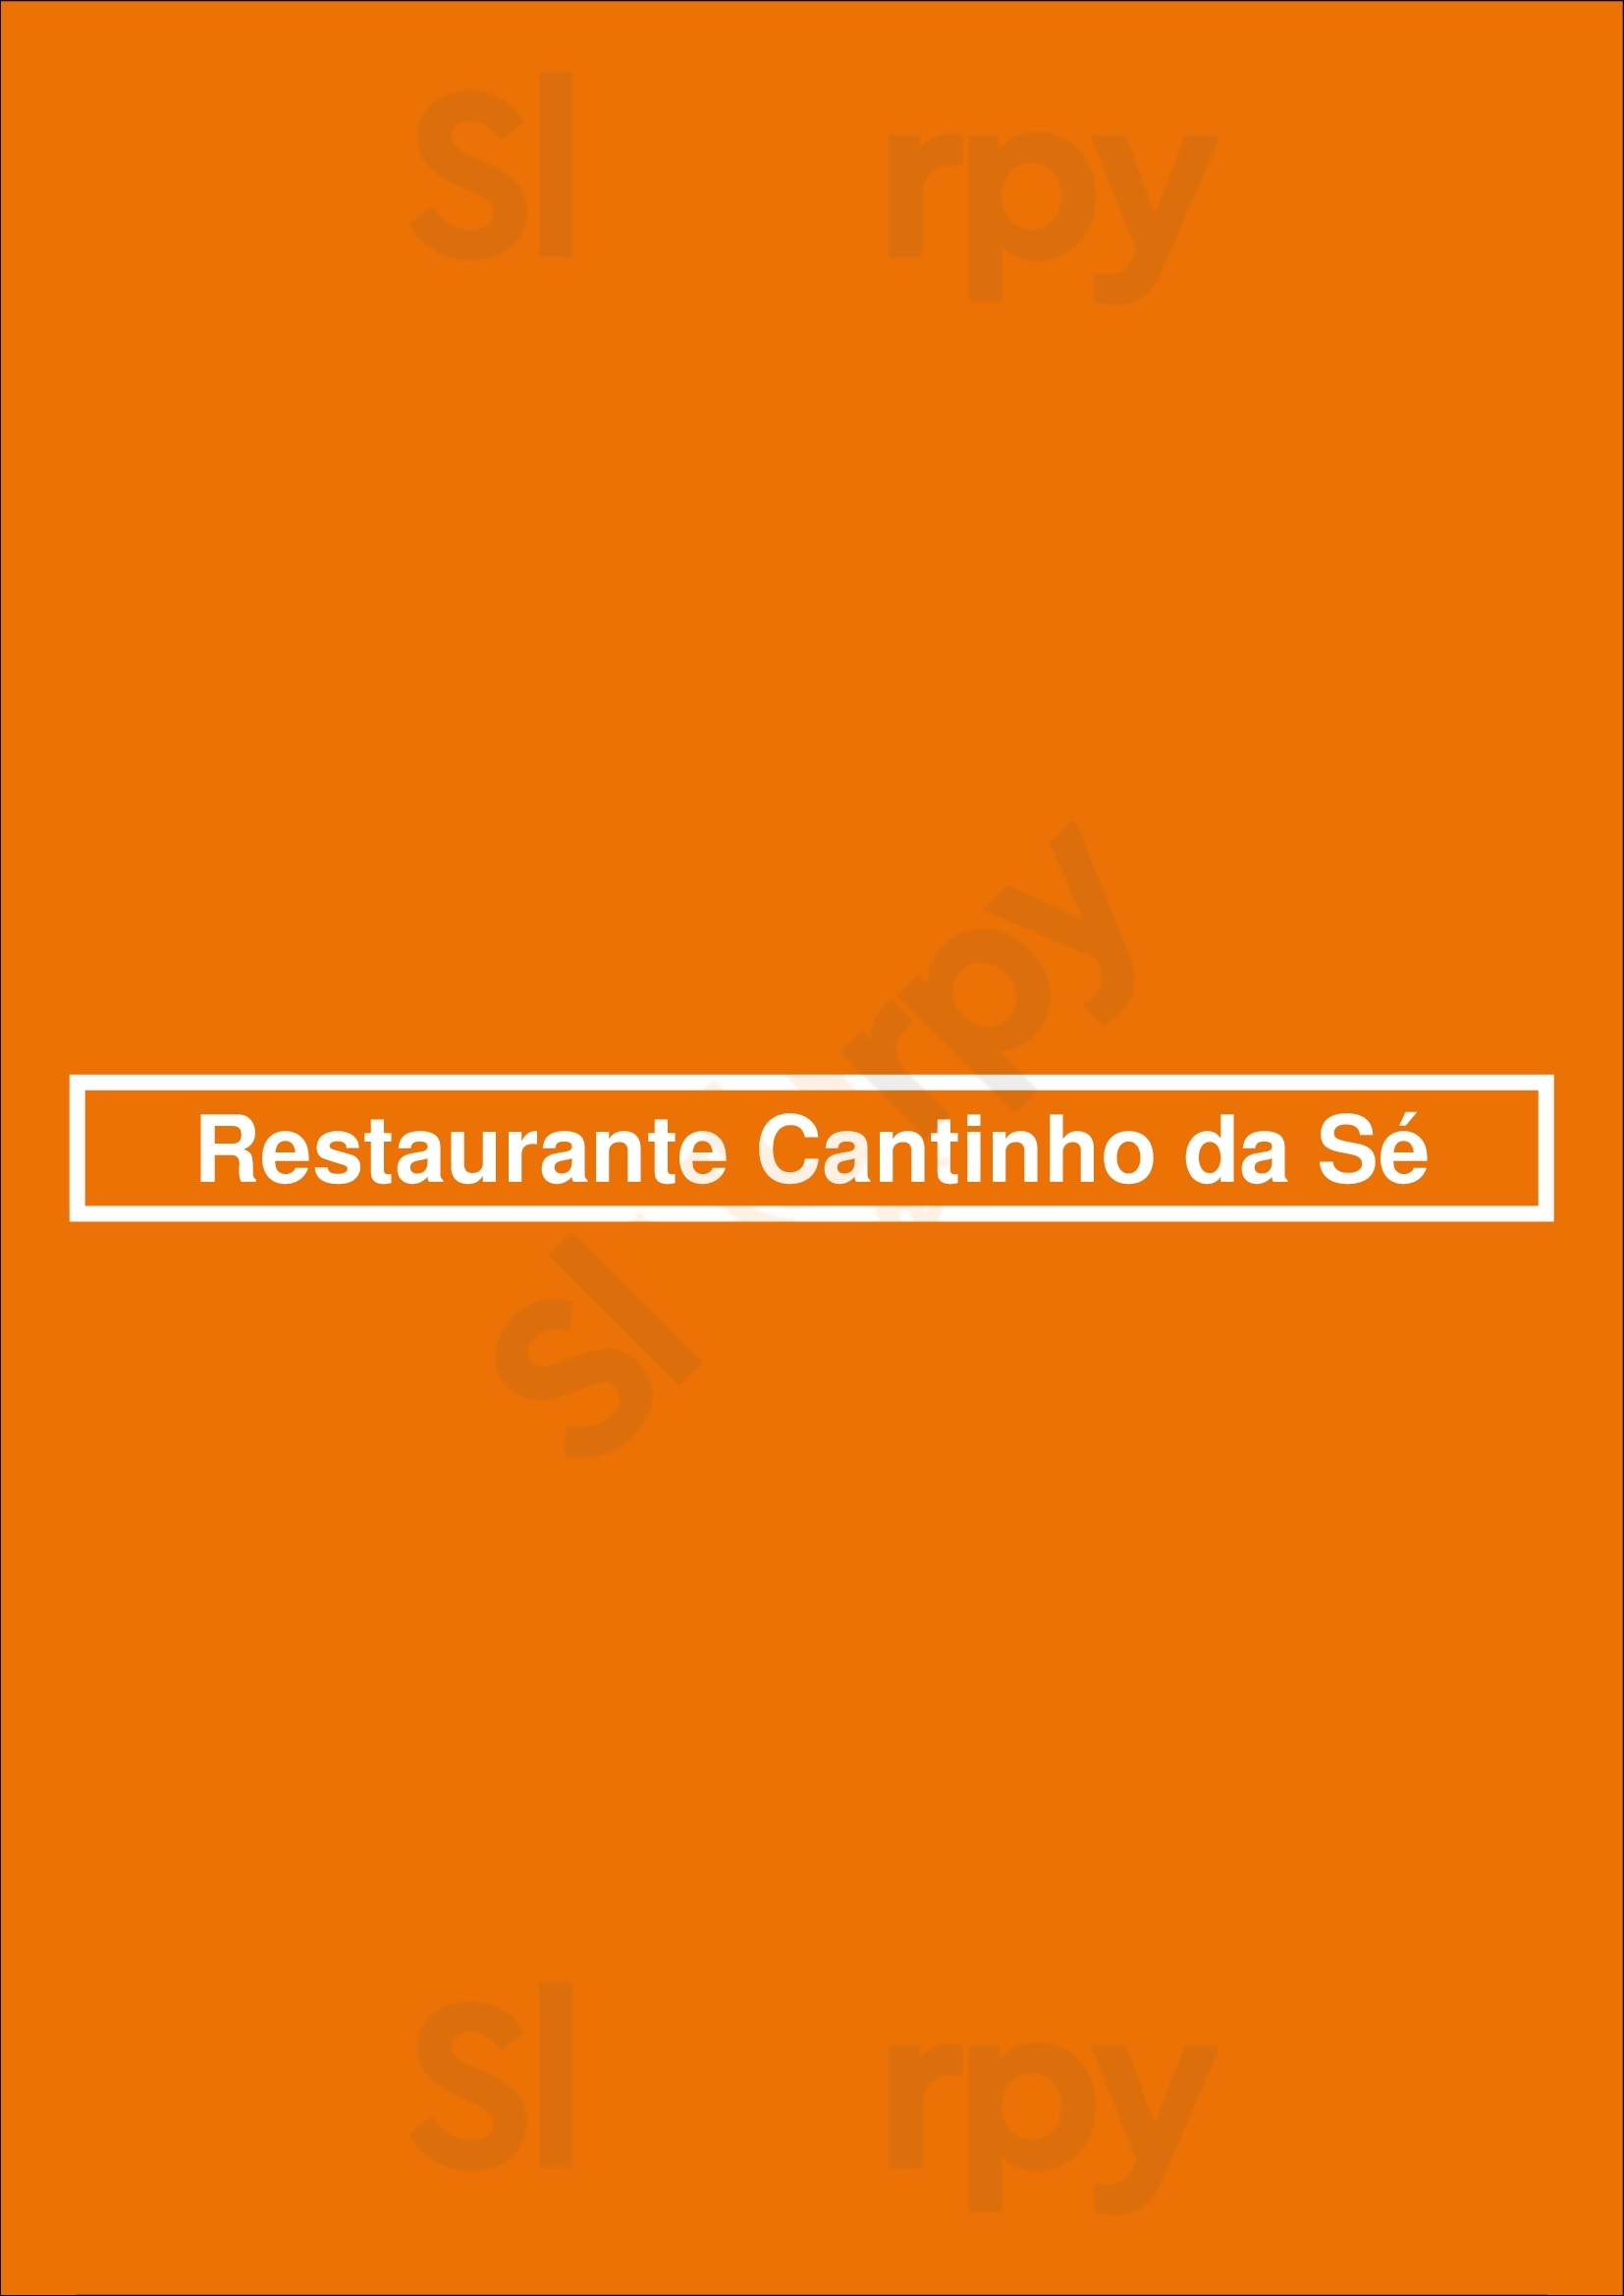 Restaurante Cantinho Da Sé Porto Menu - 1